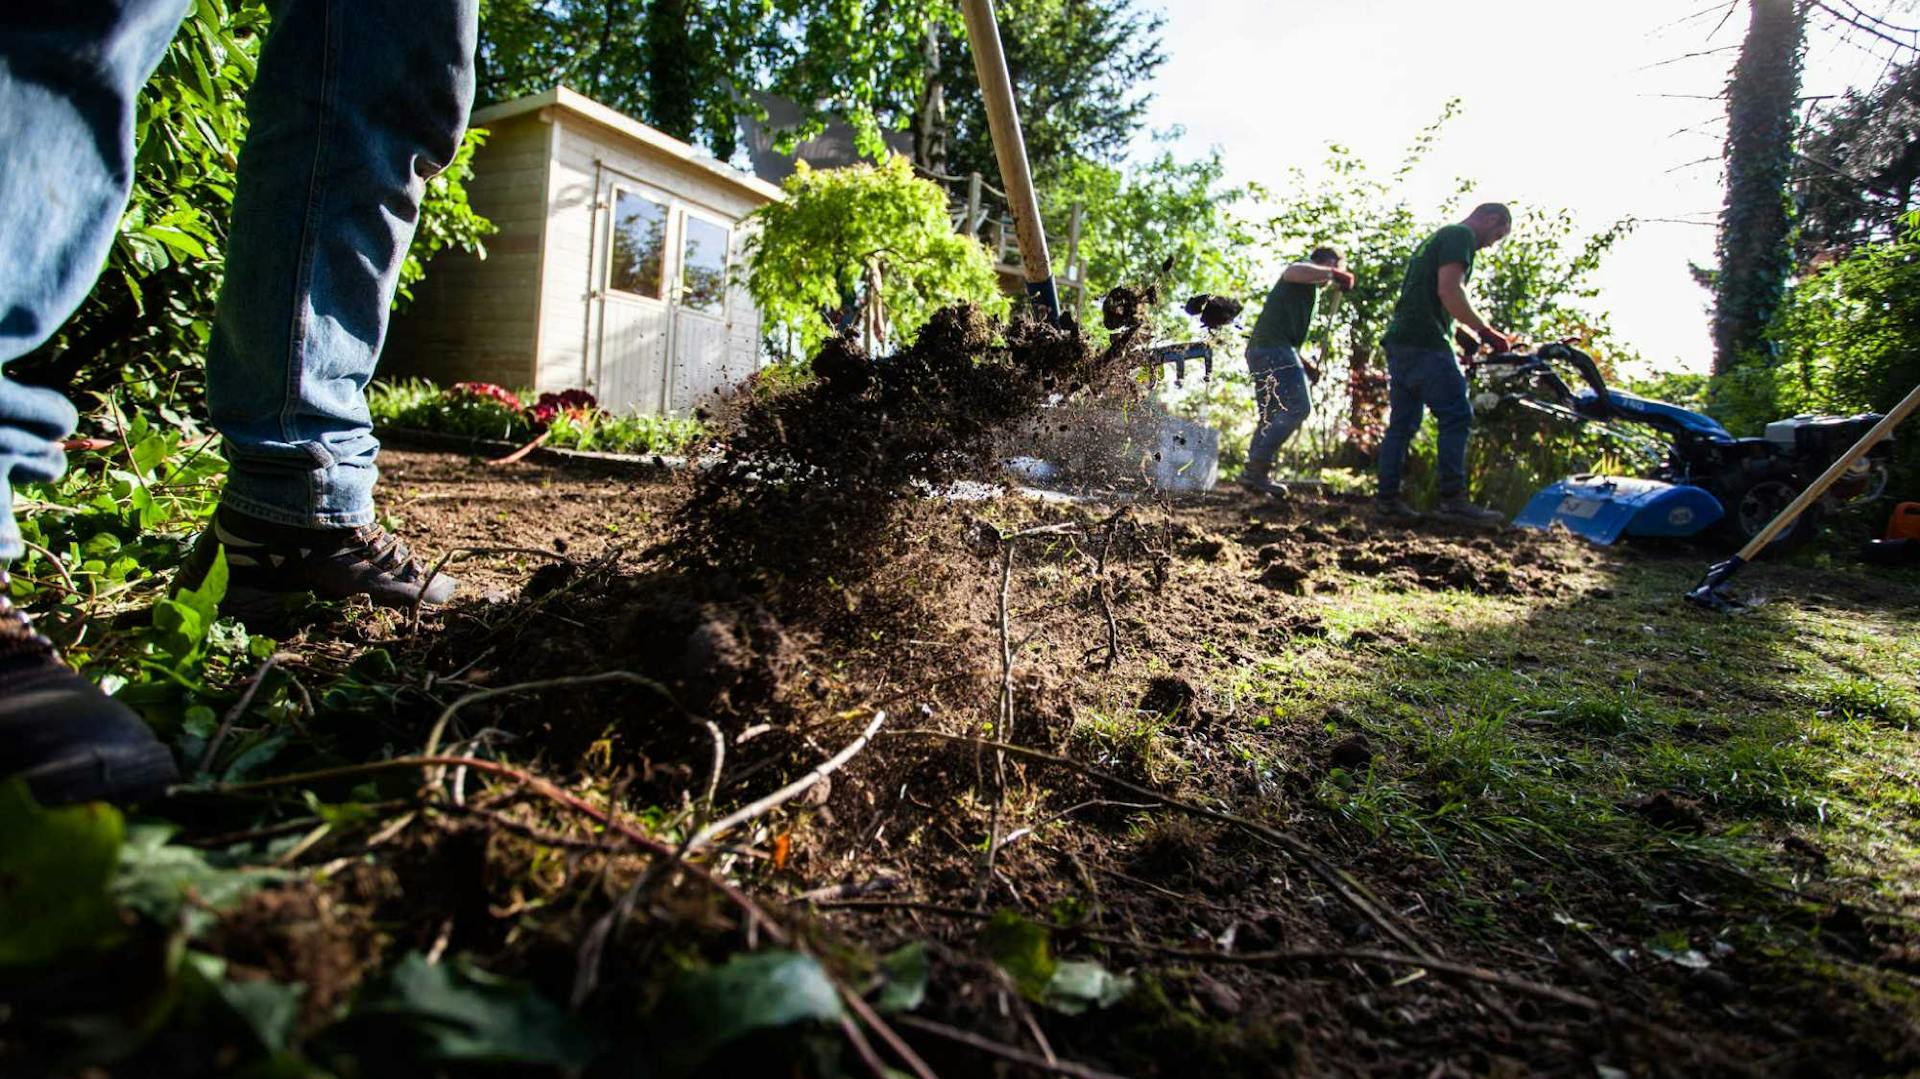 Drei Gärtner bearbeiten den Boden im Garten und graben mit Harken die Erde um.